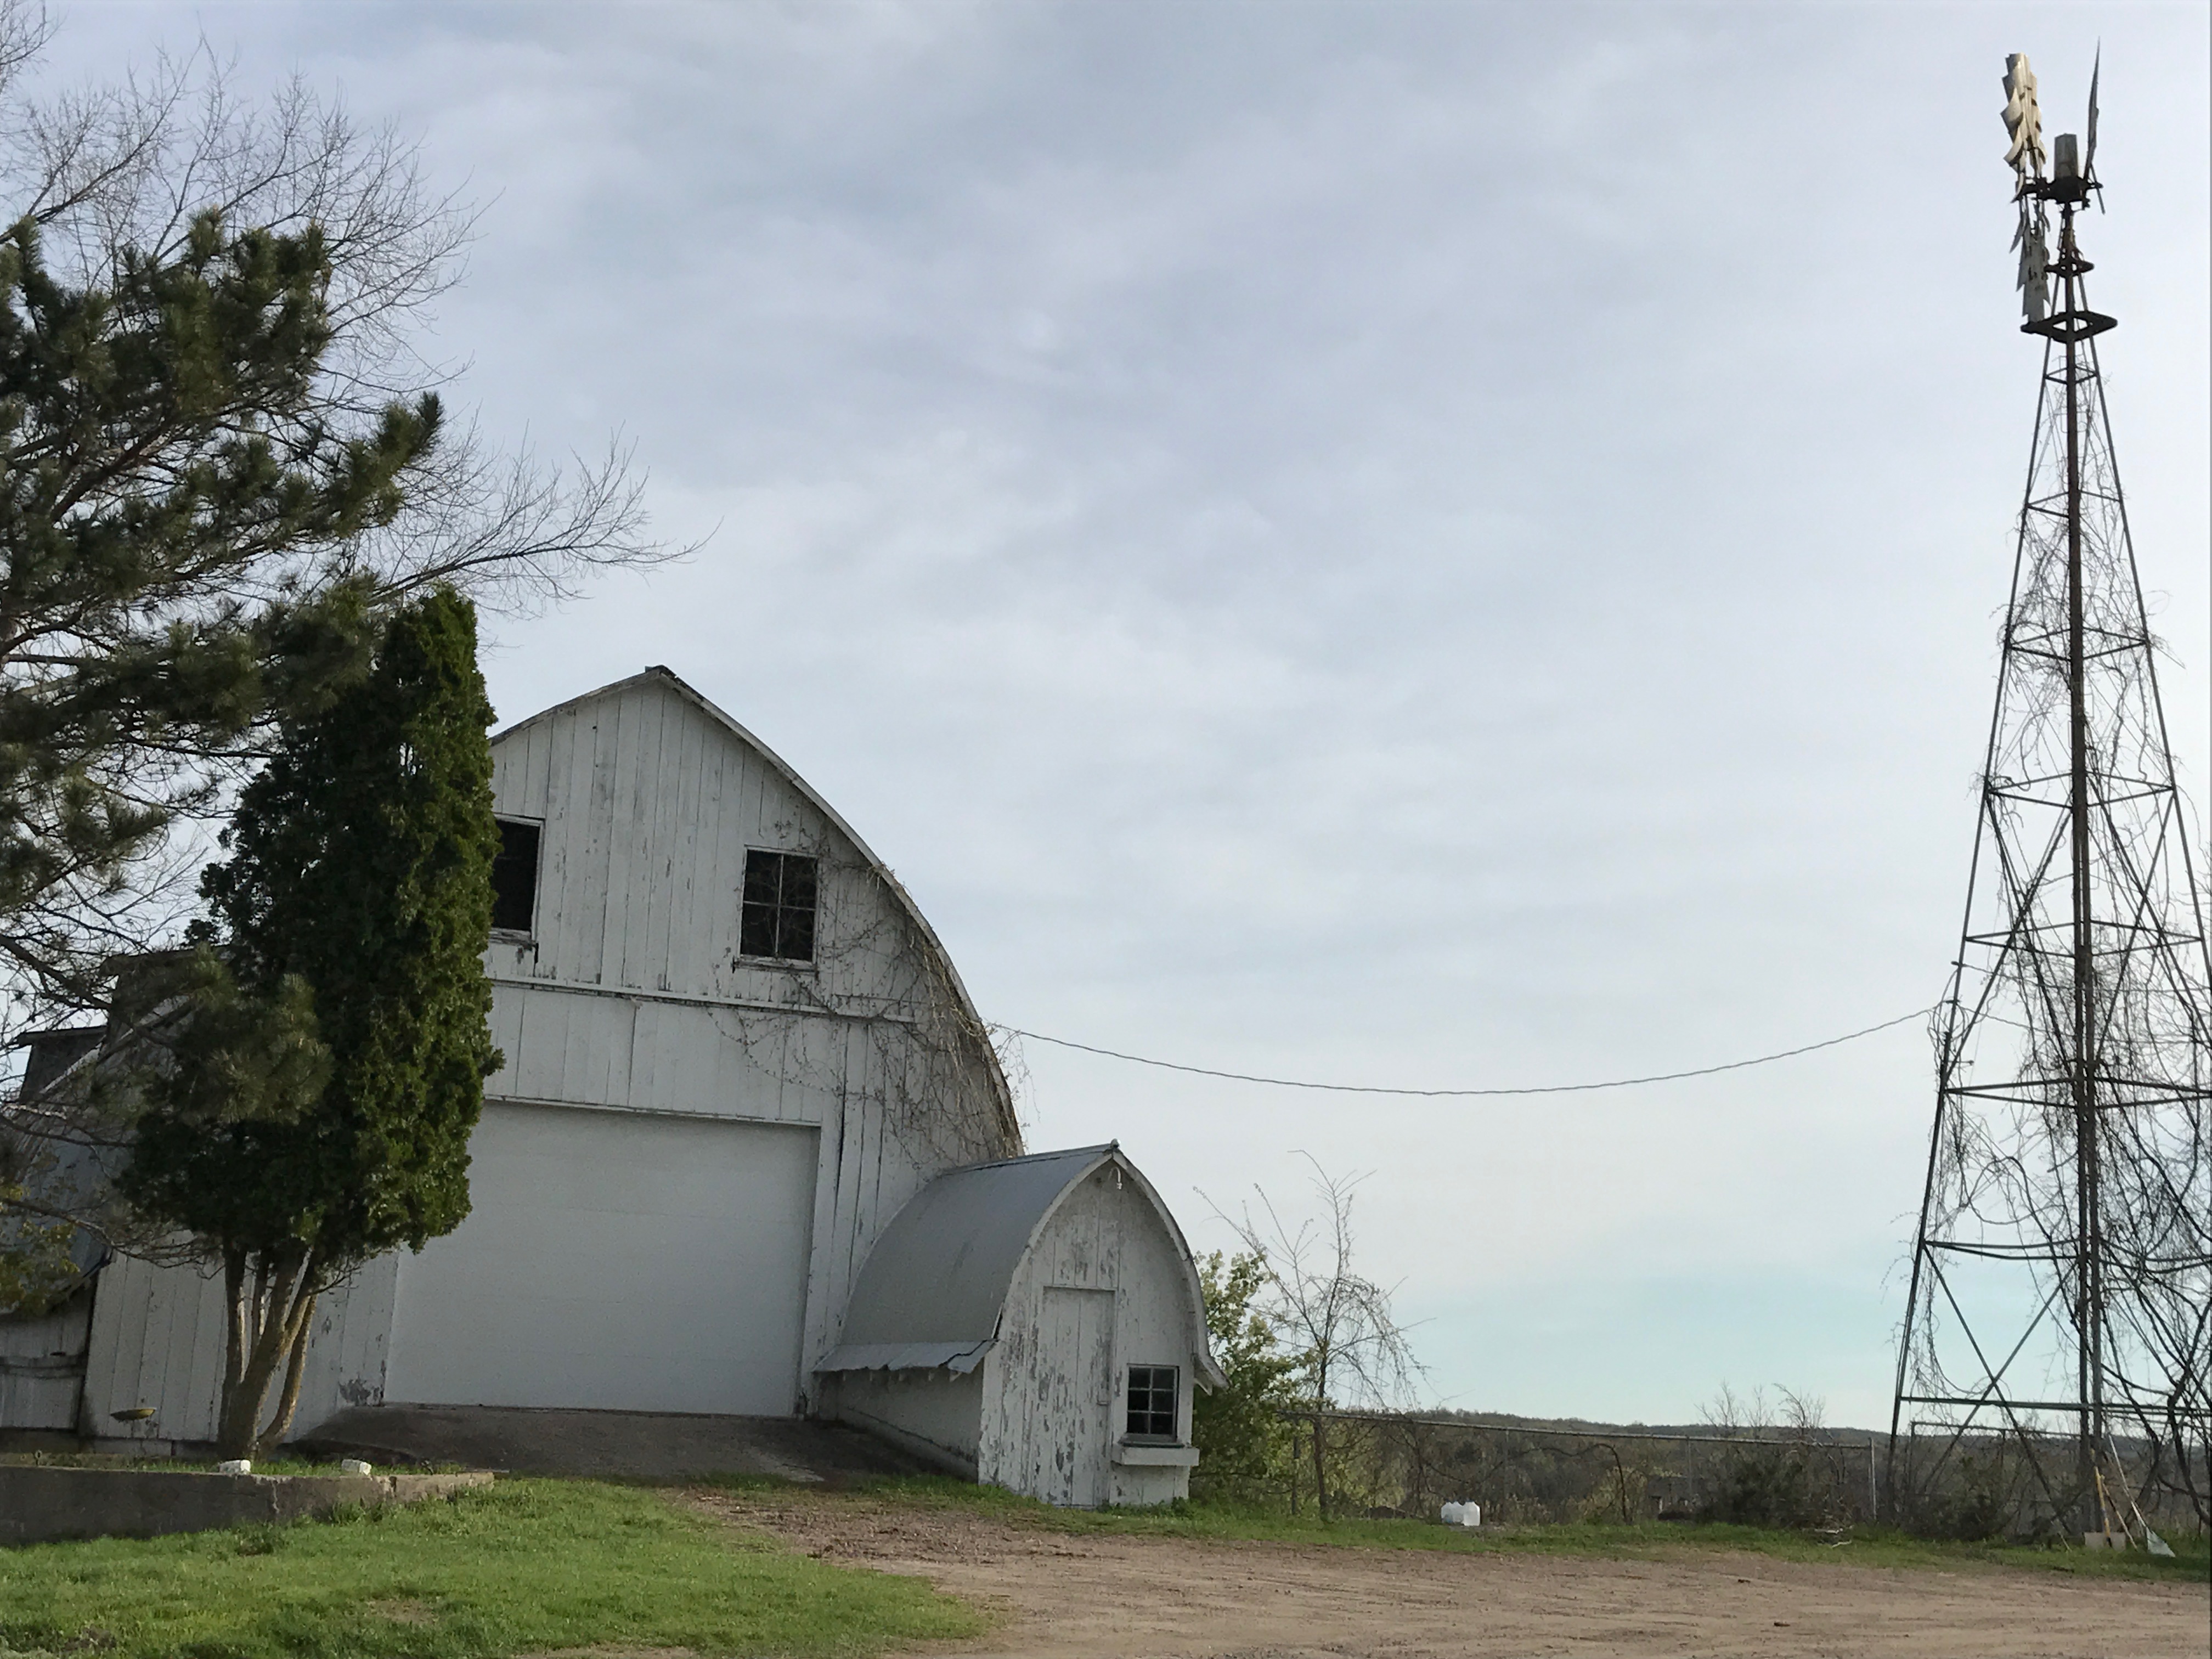 Gothic barn on Myklebust Farm in Wisconsin Dells